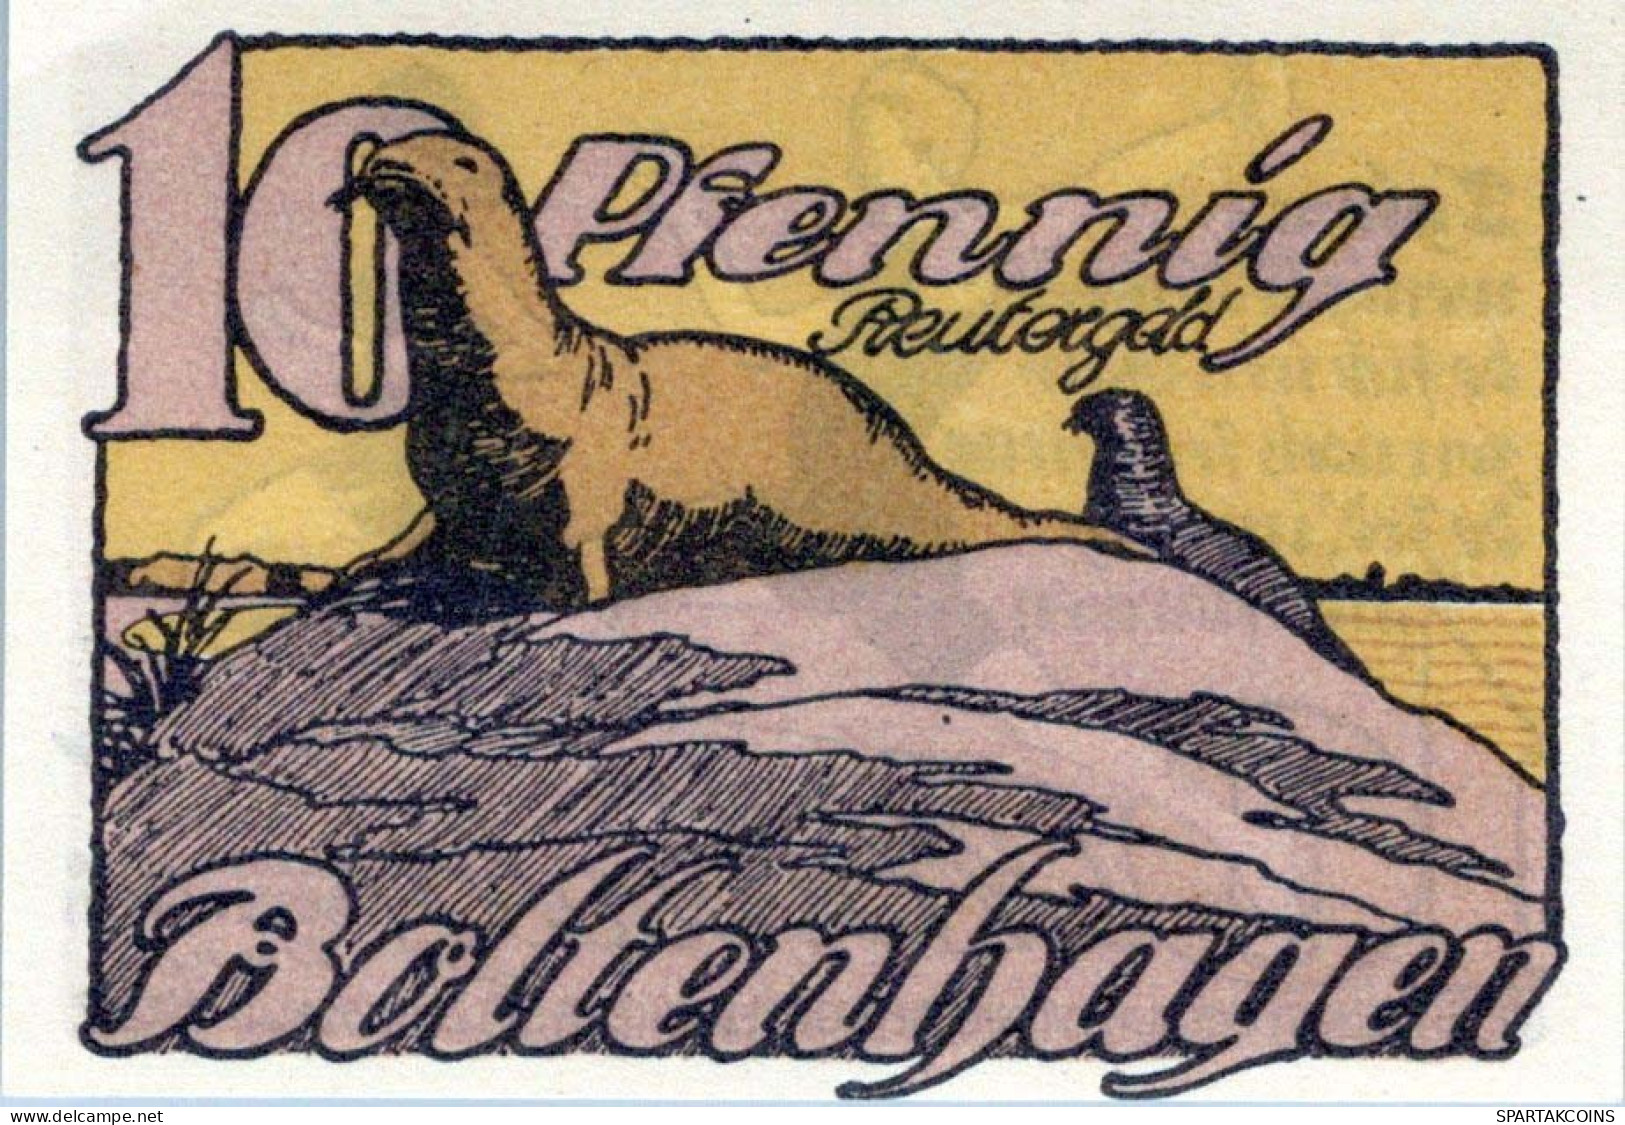 10 PFENNIG 1922 Stadt BOLTENHAGEN Mecklenburg-Schwerin UNC DEUTSCHLAND #PI990 - [11] Local Banknote Issues